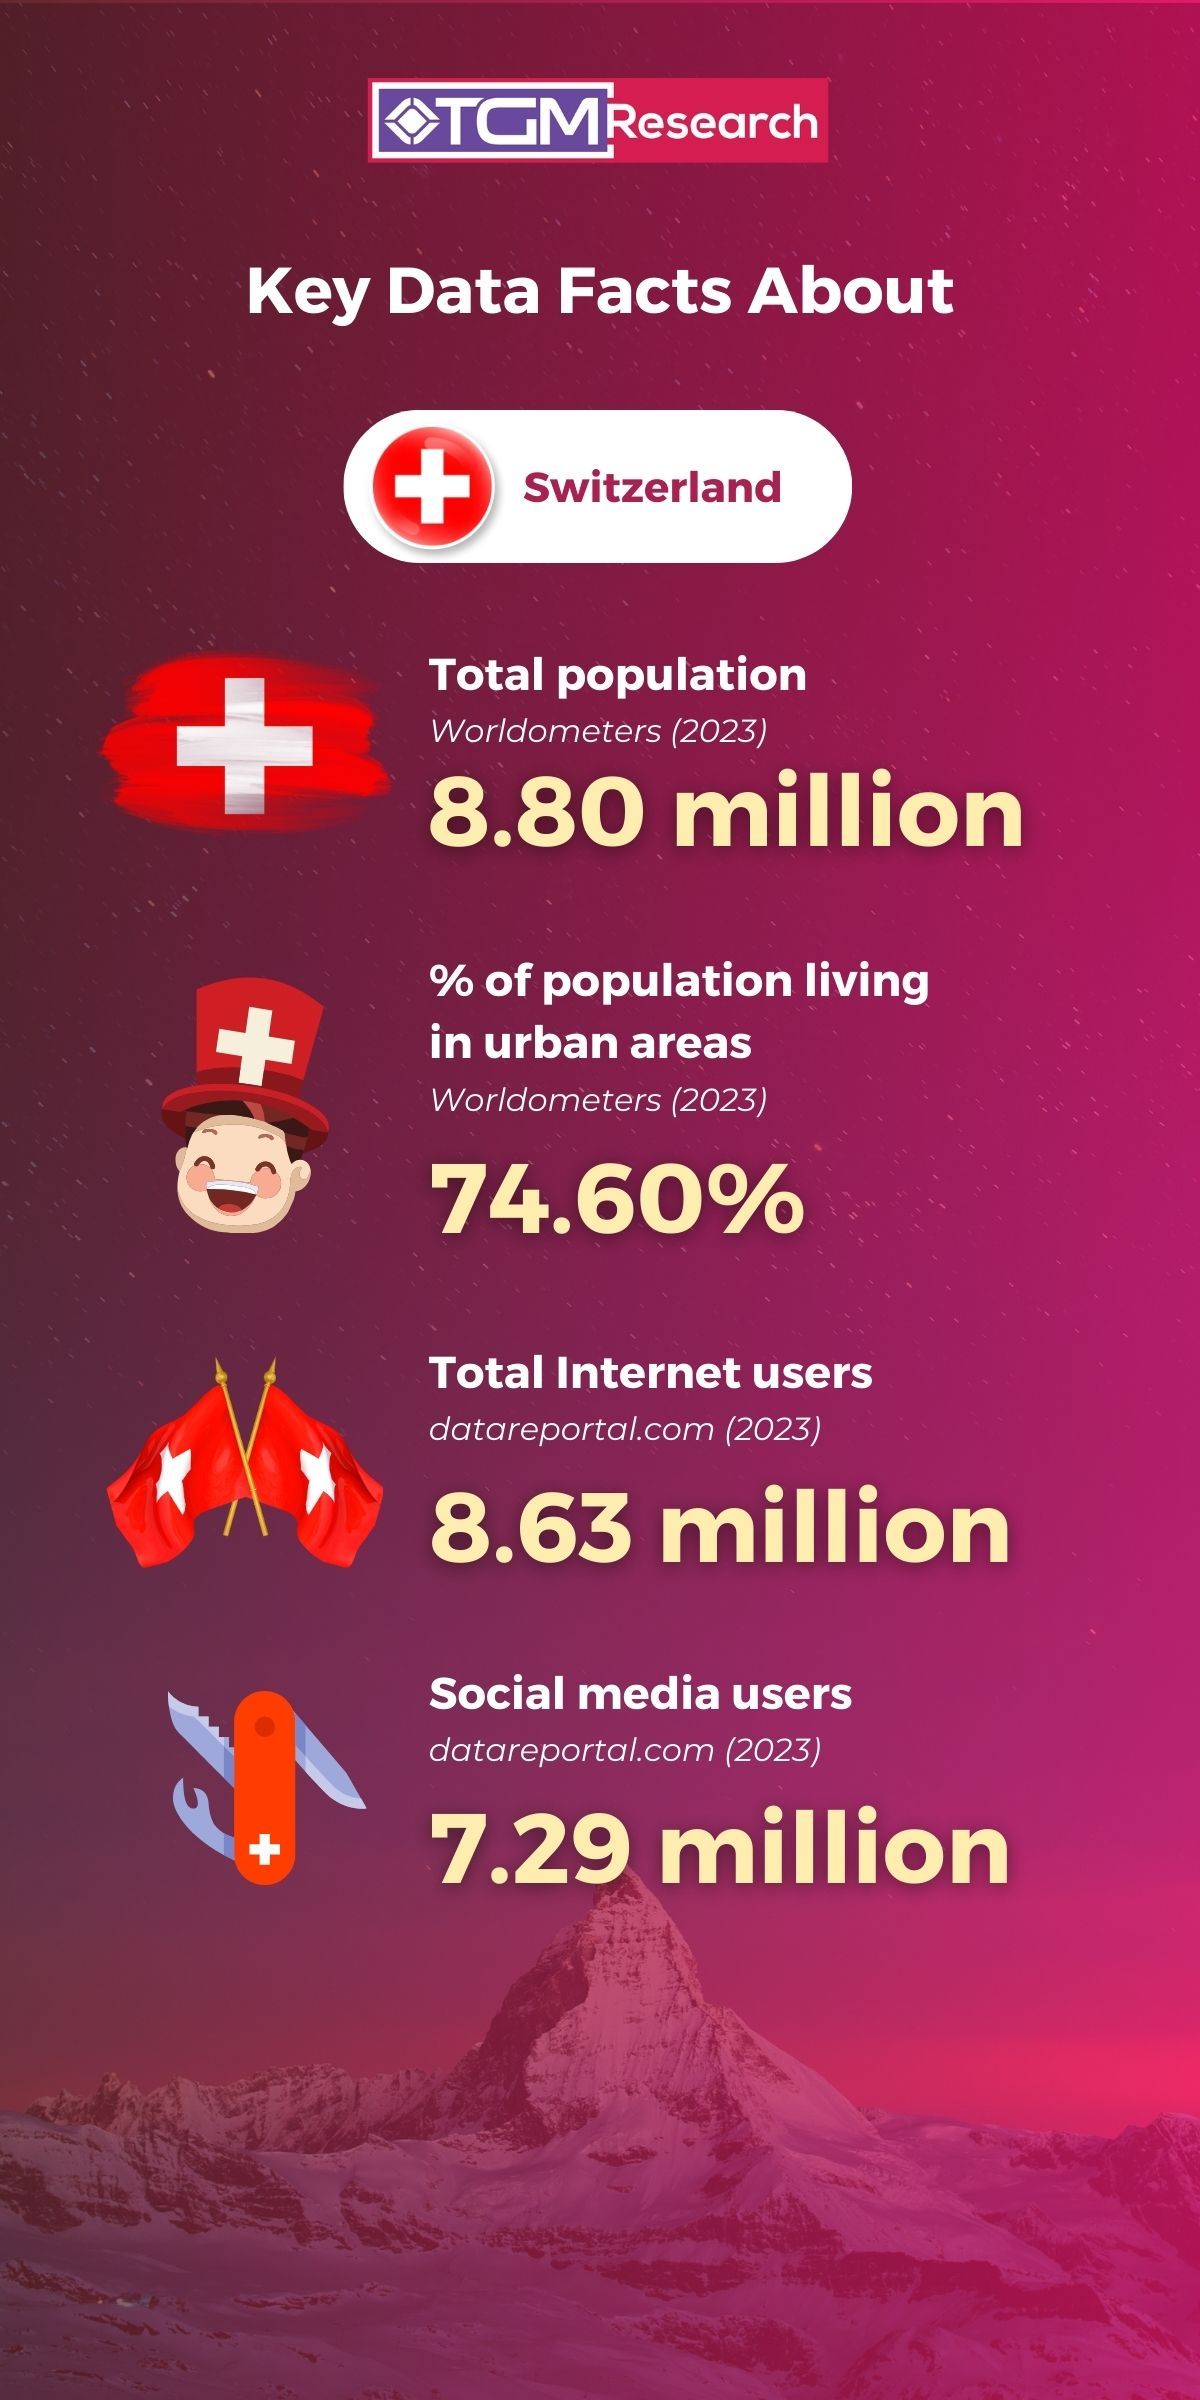 Key data facts about Switzerland